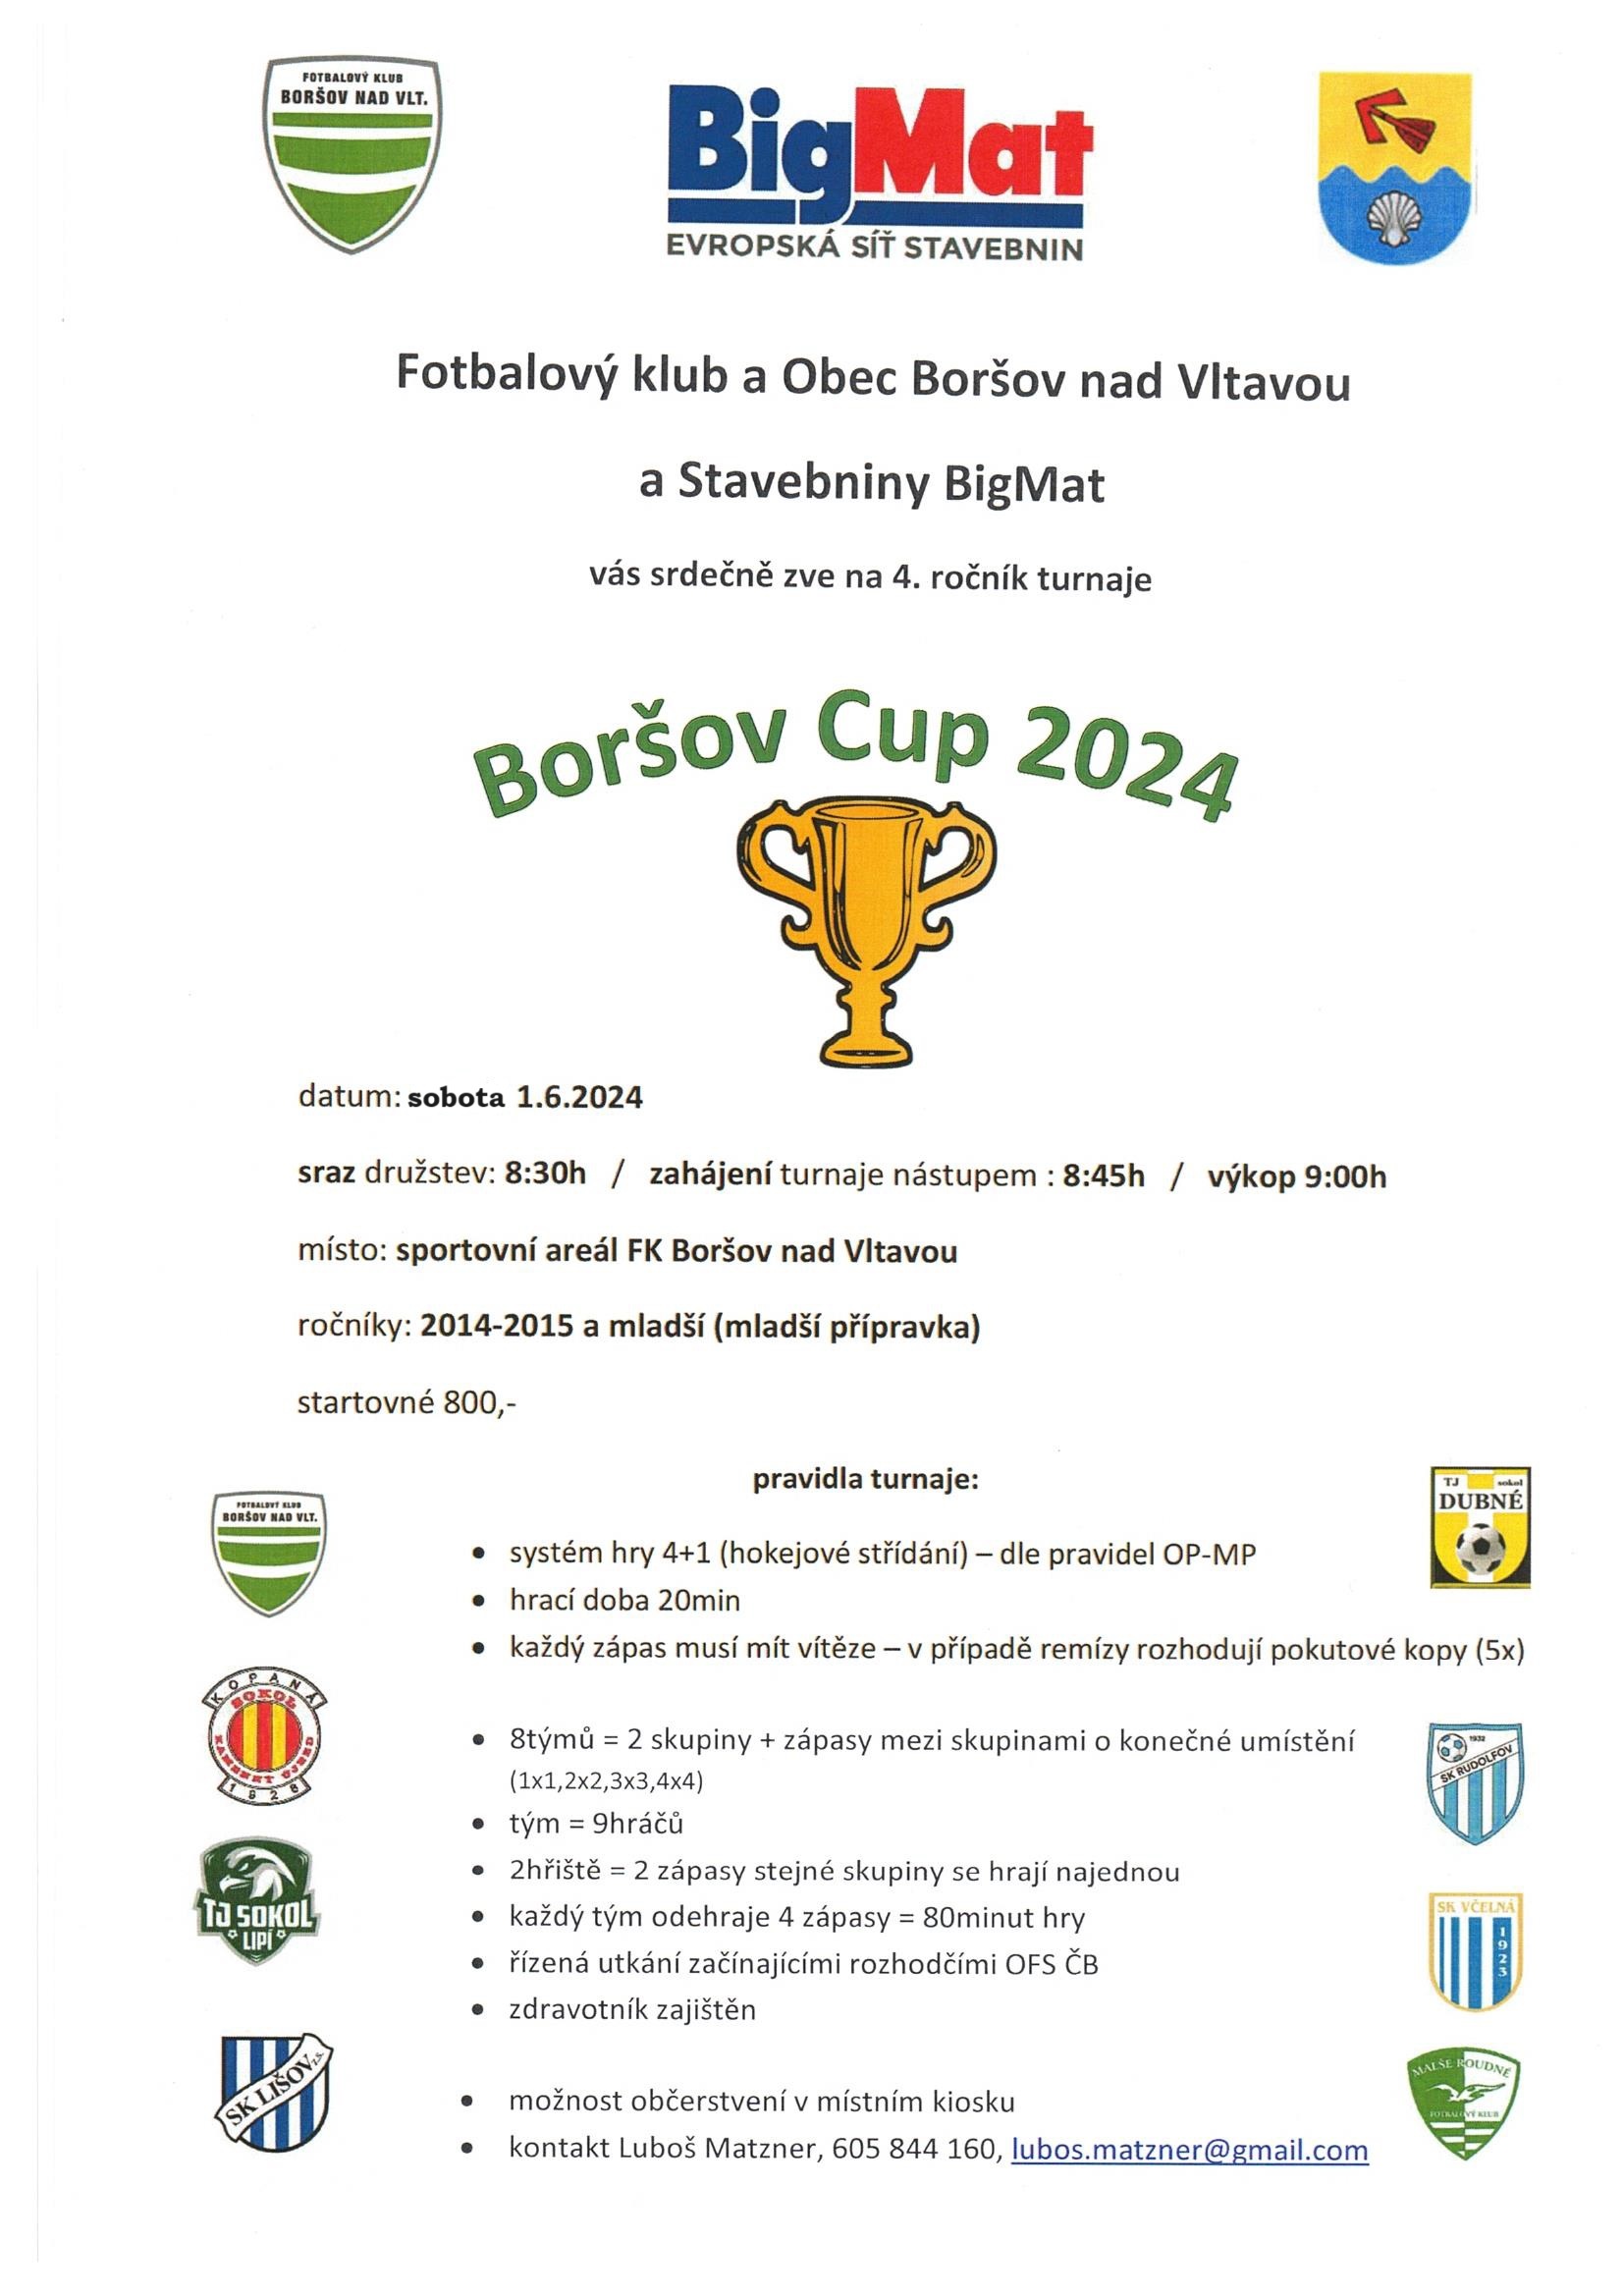 Boršov cup 2024